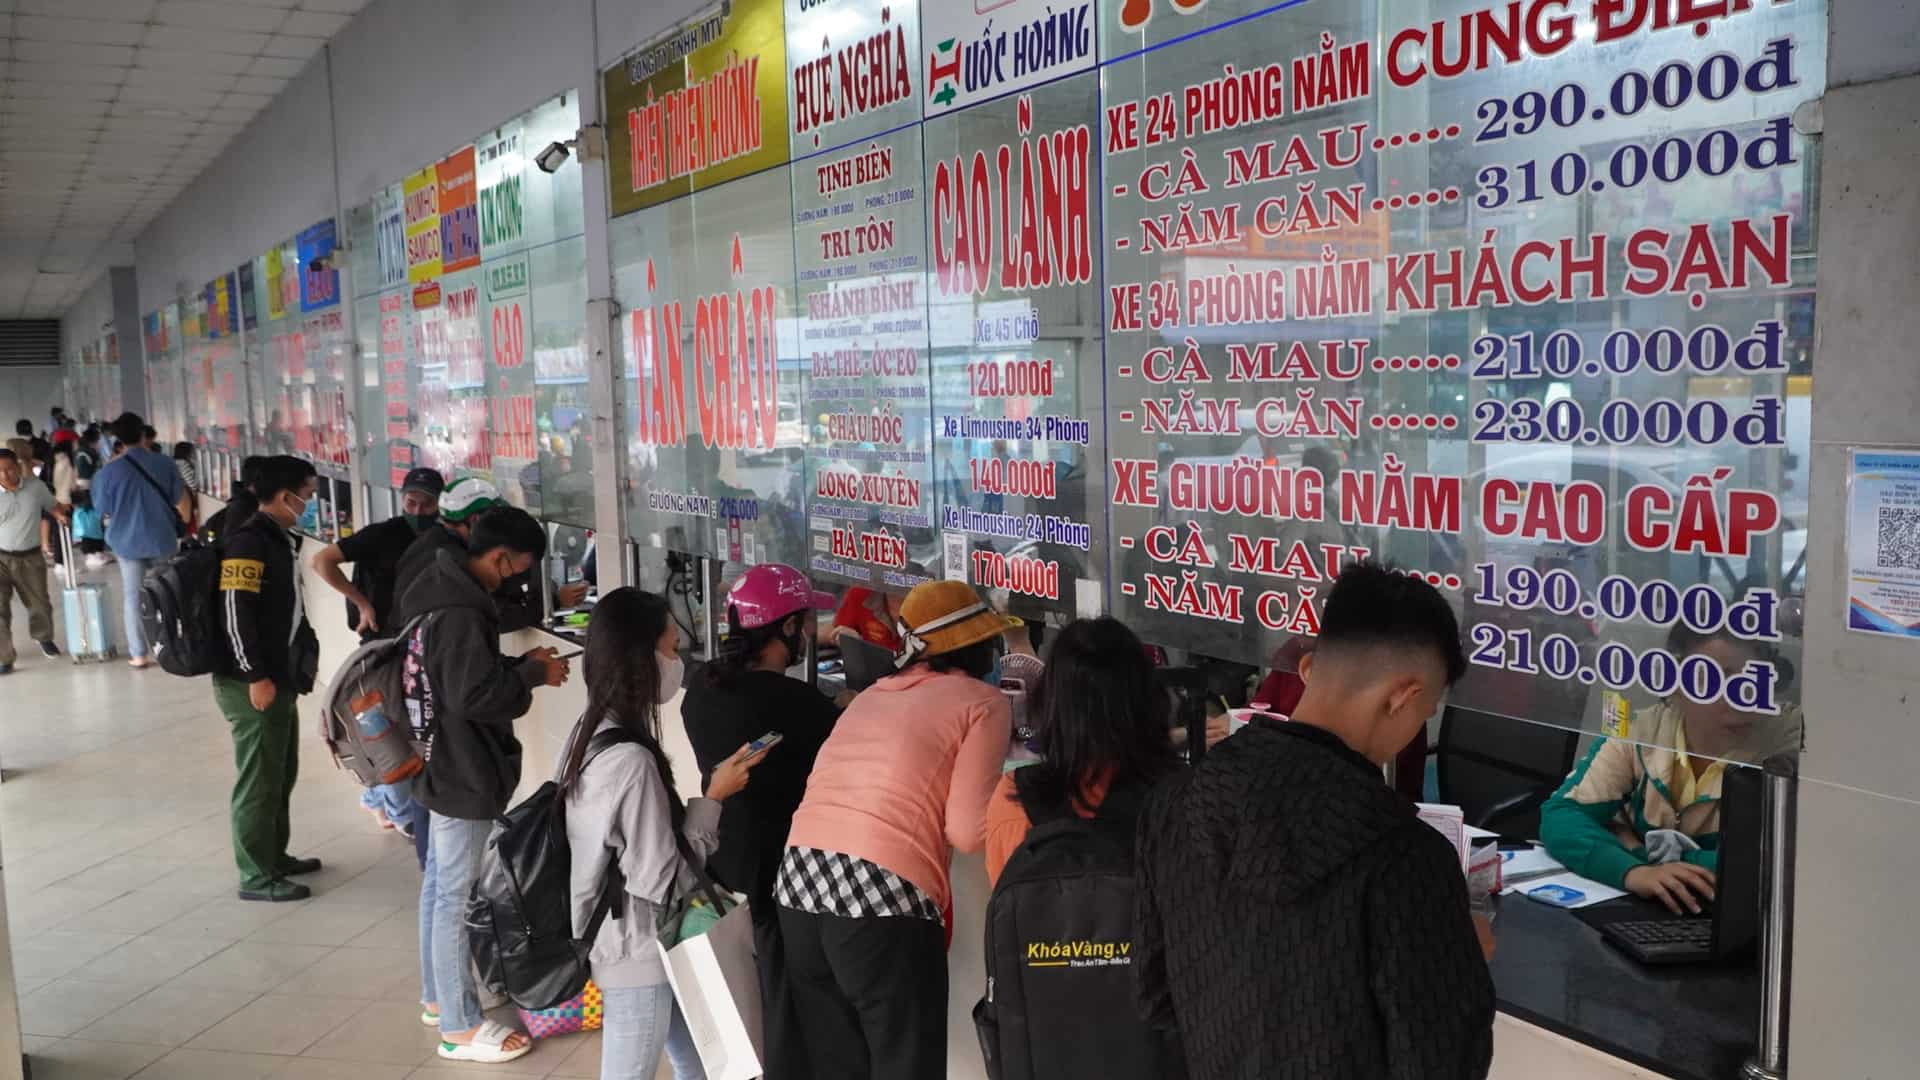 Tại các quầy bán vé liên tục có người ra vào, trong đó một số nha xe lớn như Phương Trang có rất đông người dân xếp hàng chờ tới lượt mua vé. 